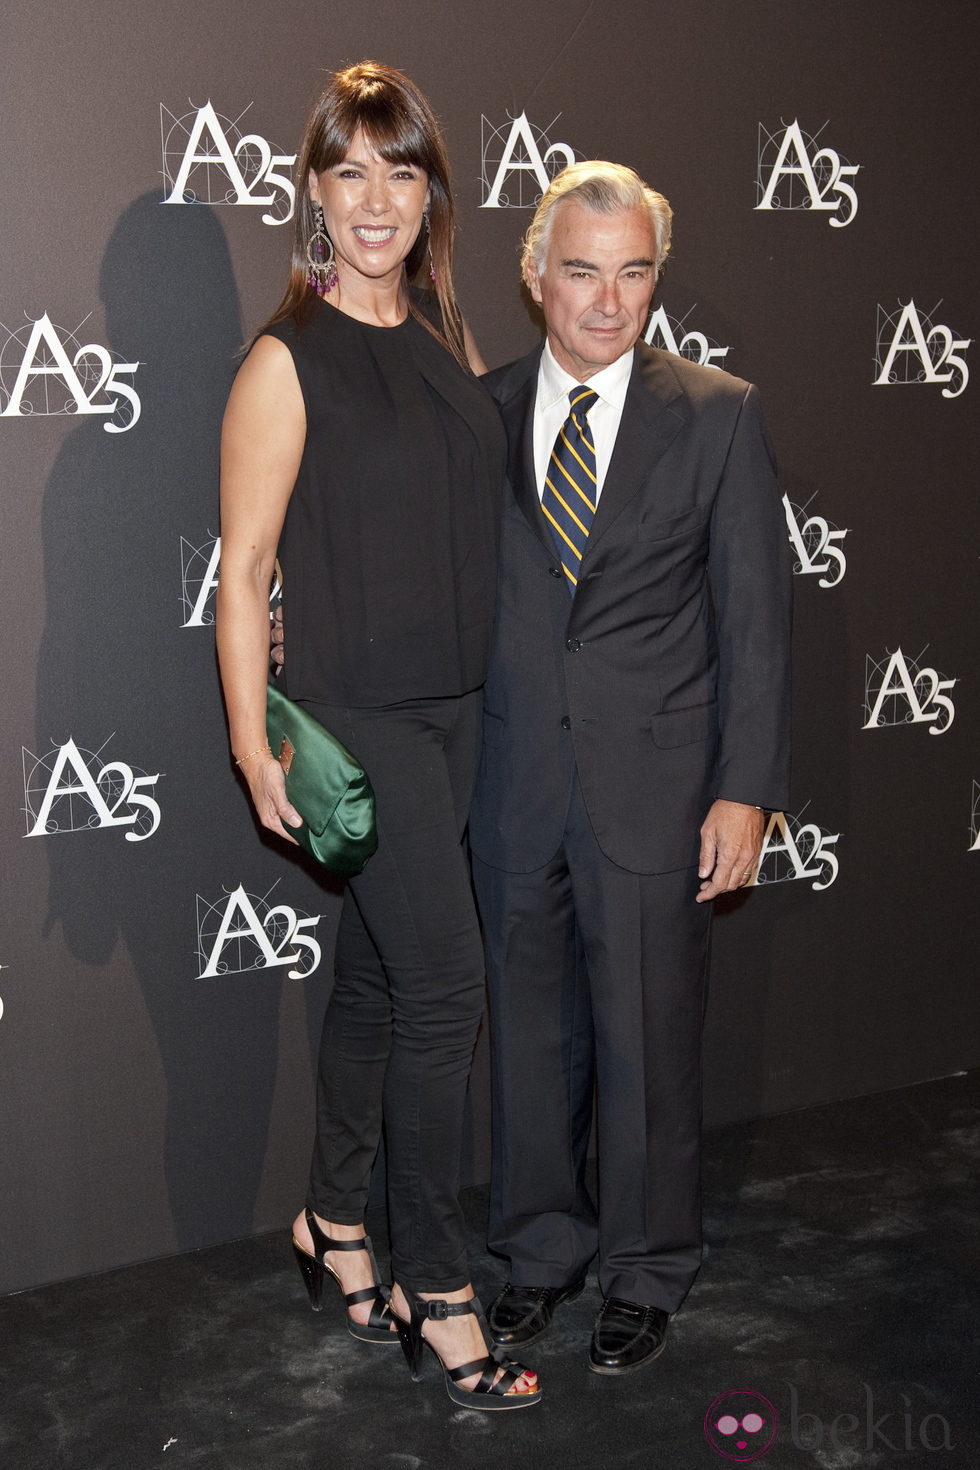 Mabel Lozano y su marido Eduardo Campoy durante un acto de la Academia de Cine